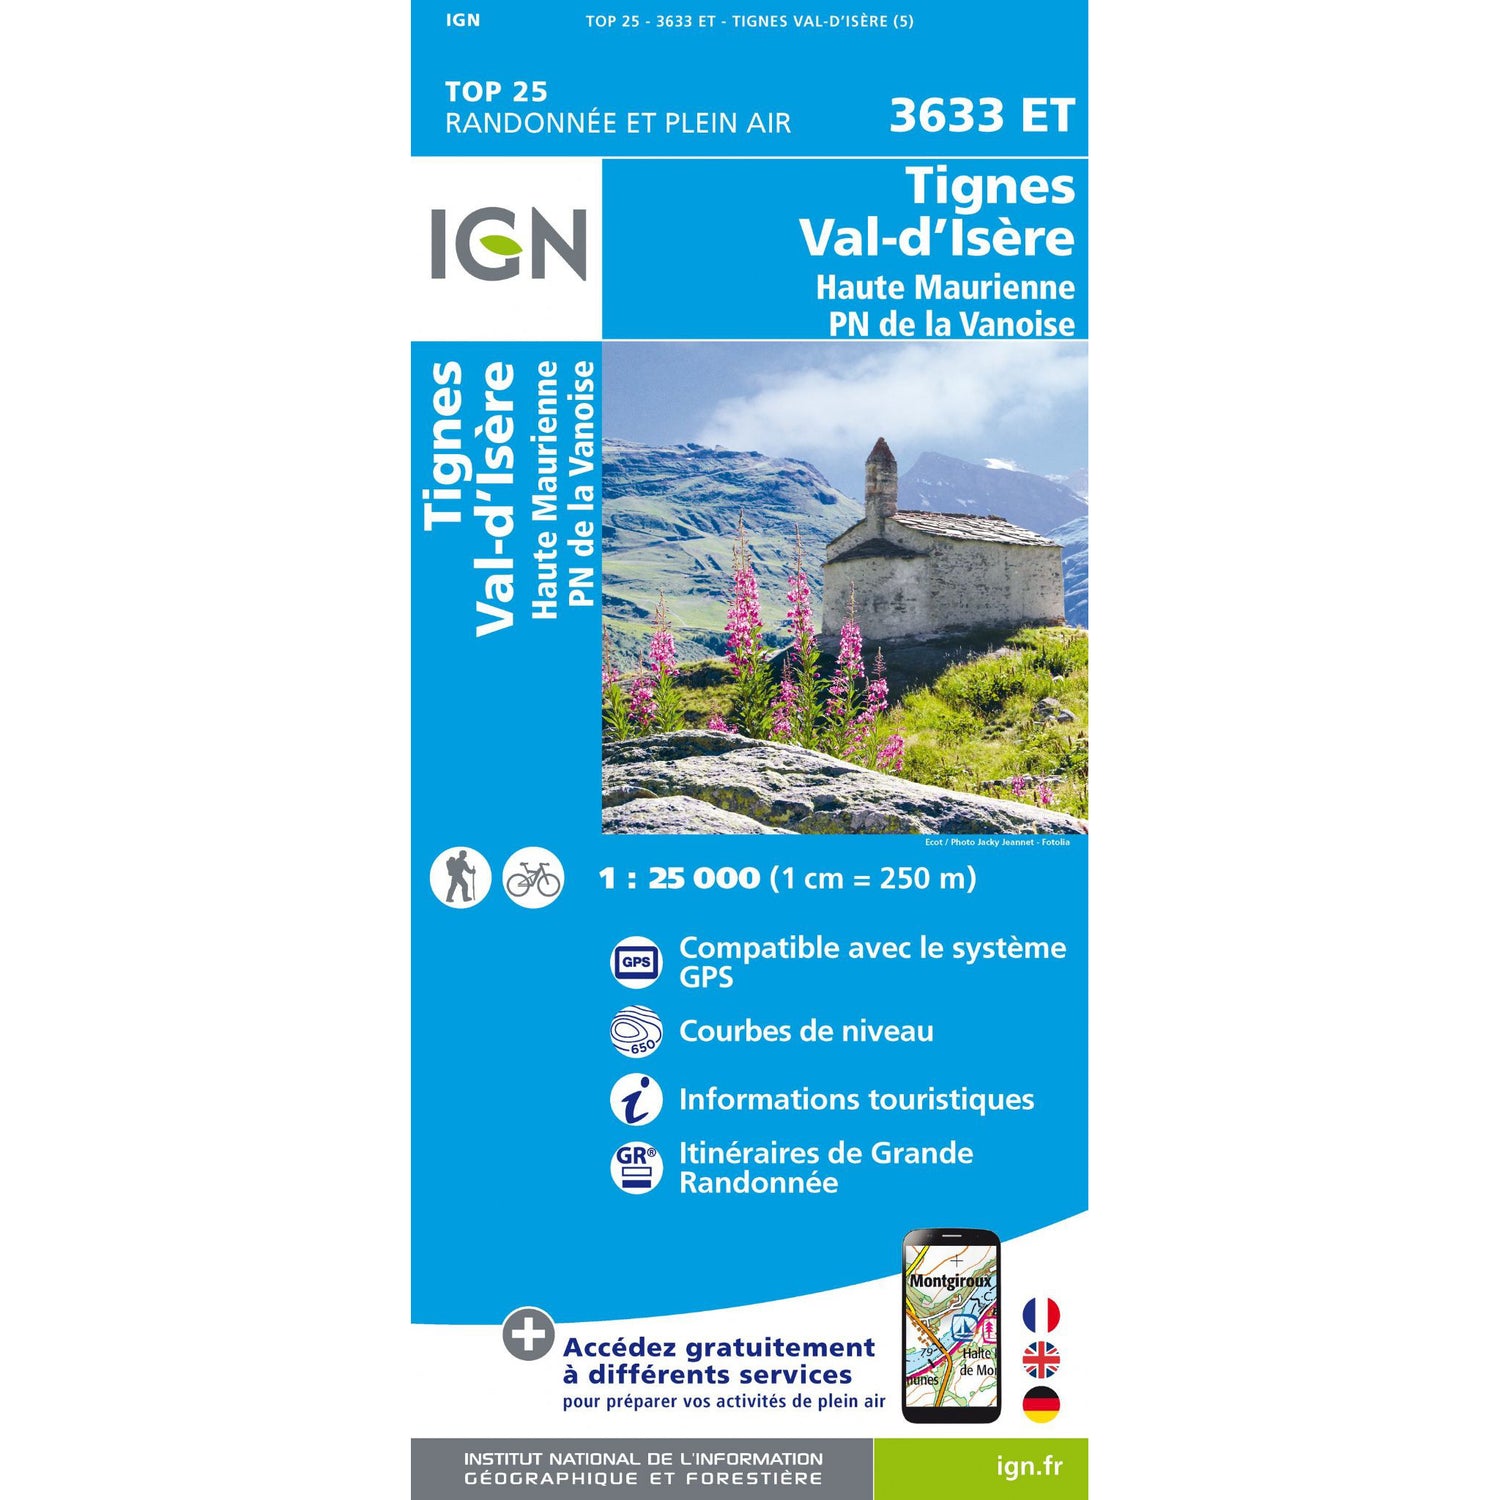 Tignes Val d'Isere Map Map | IGN 3633 ET Tignes, Val d'Isere, Haute Maurienne, PN de la Vanoise | Backcountry Books